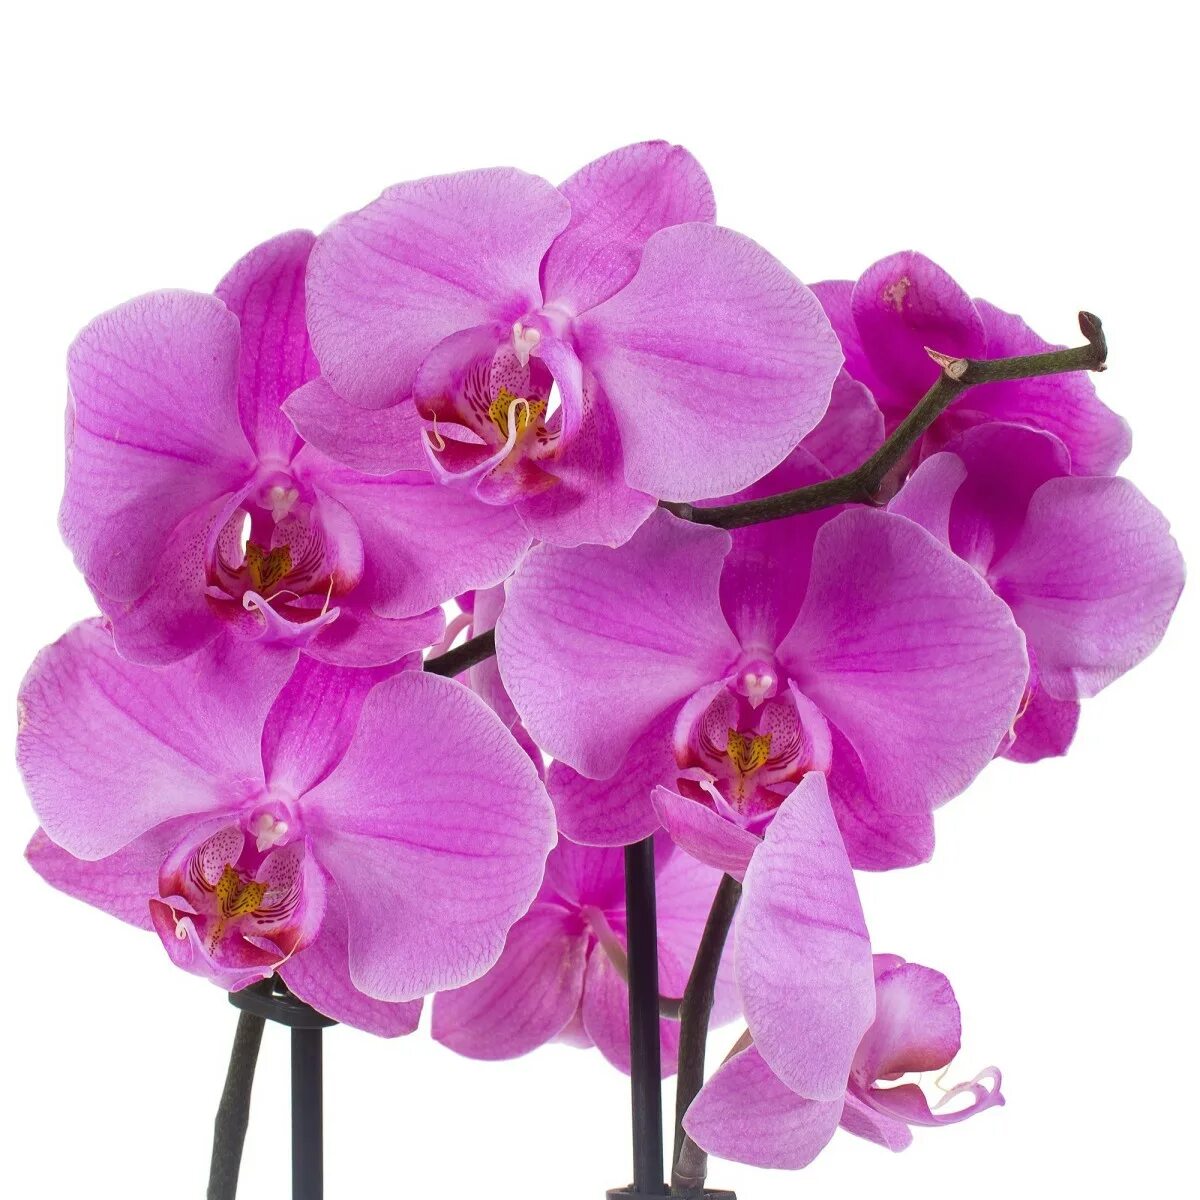 Леруа мерлен орхидея в горшке. Орхидея Атлантис. Орхидея фаленопсис Атлантис. Орхидея фаленопсис Atlantis. Фаленопсис Атлантис пелорик.